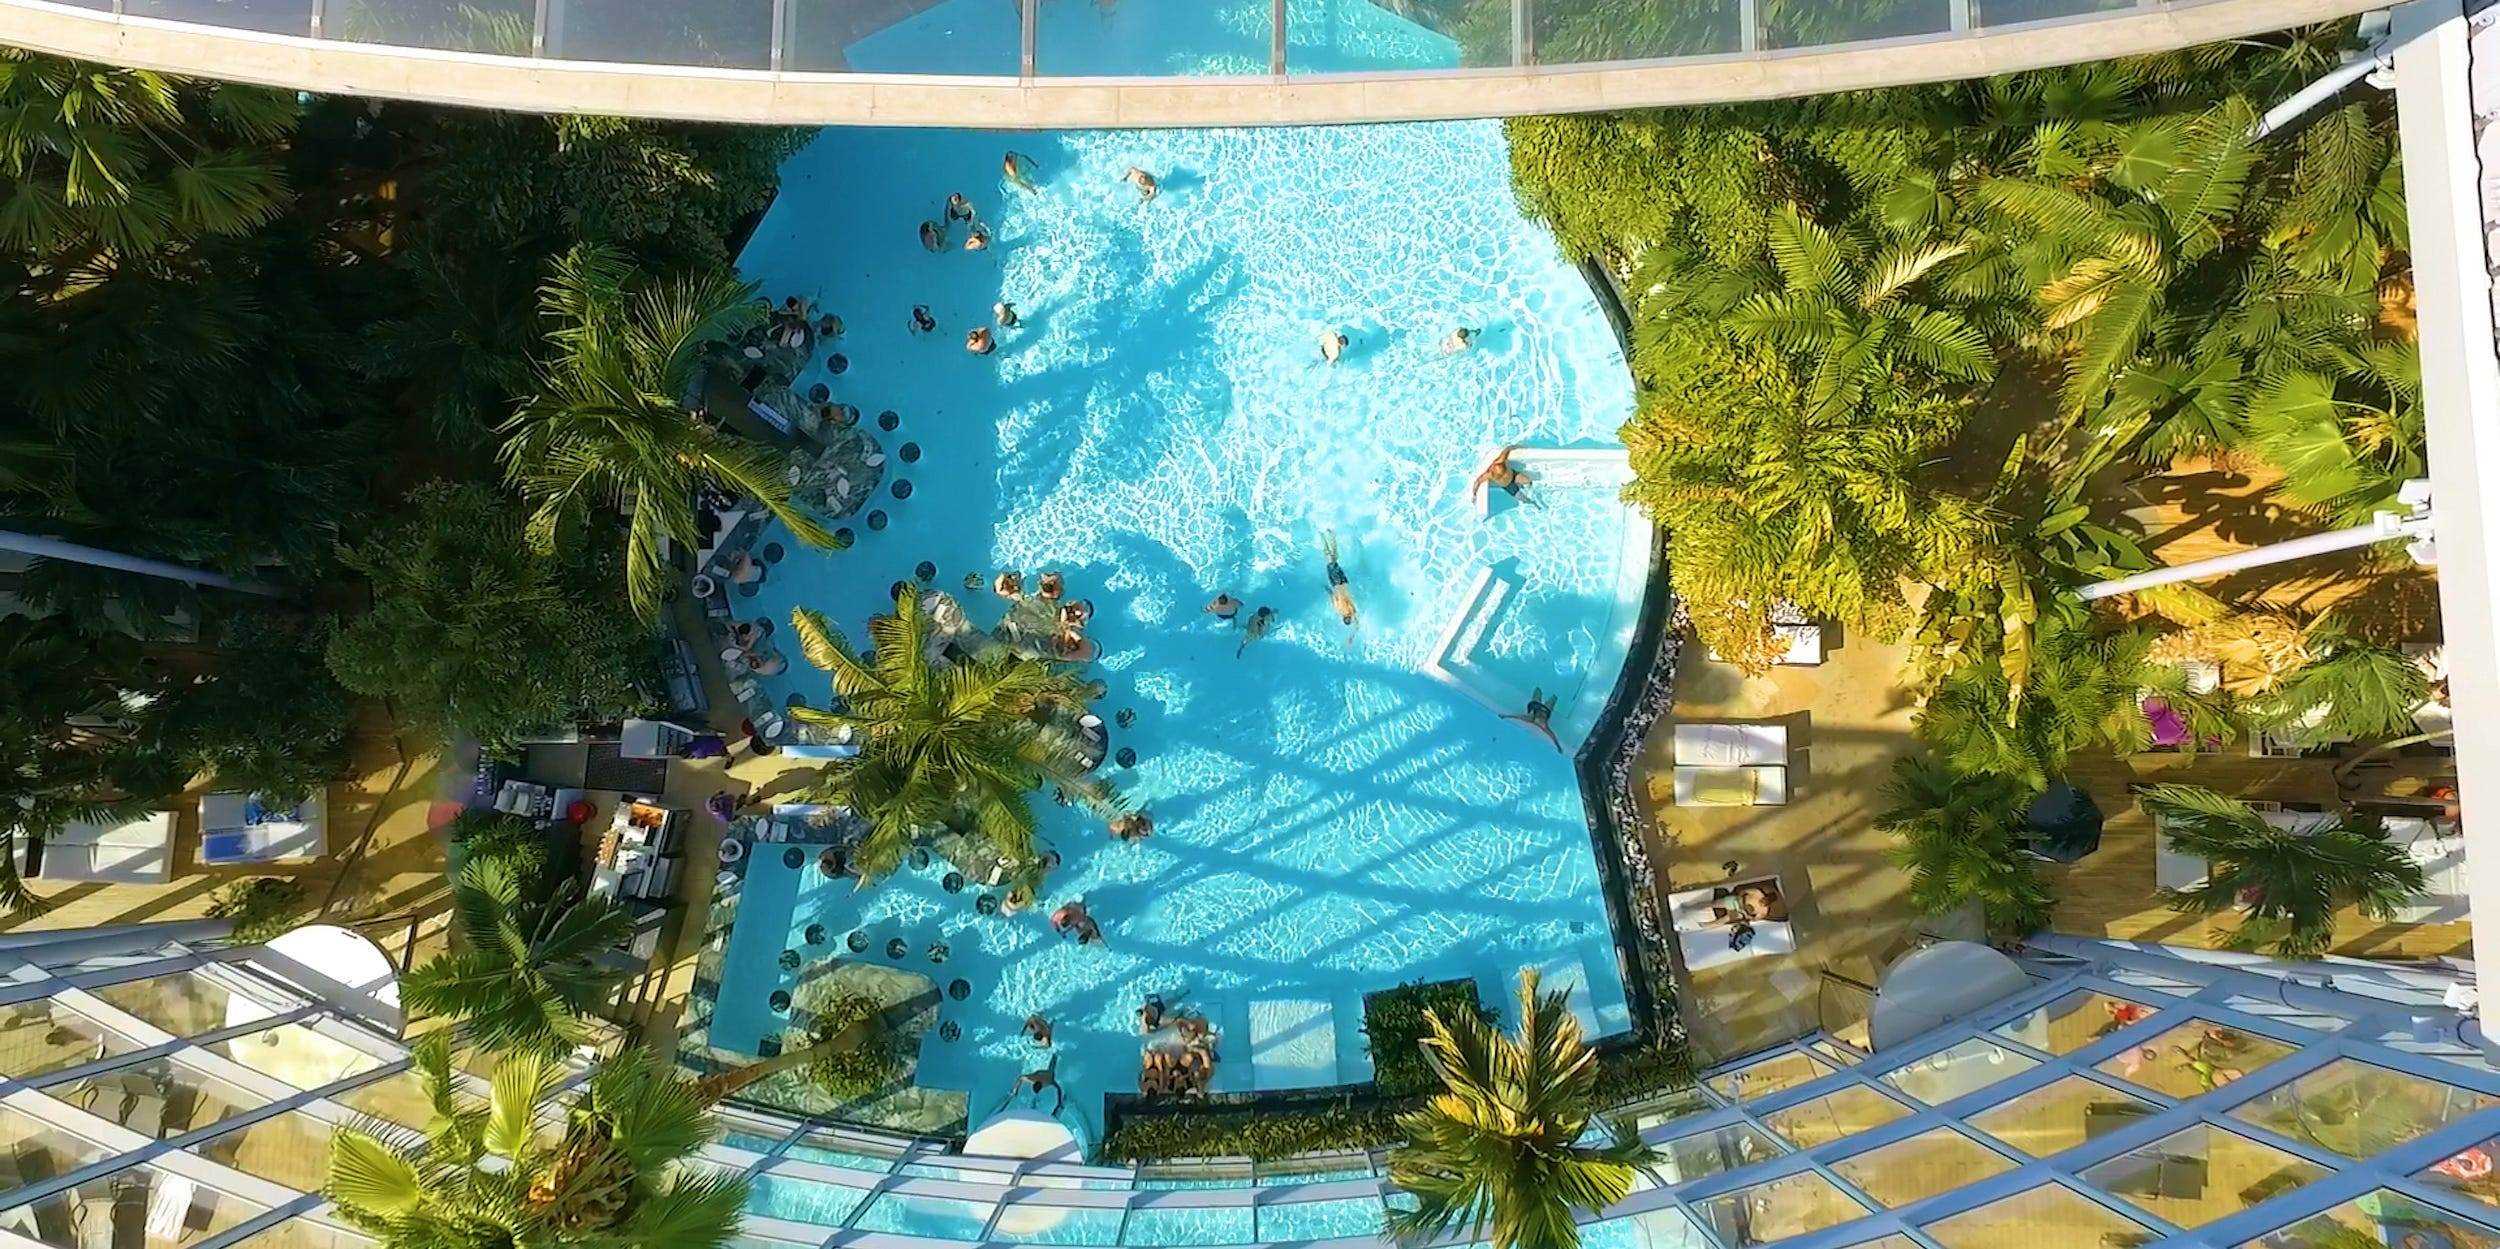 Pool neben Pflanzen unter einer transparenten Kuppel